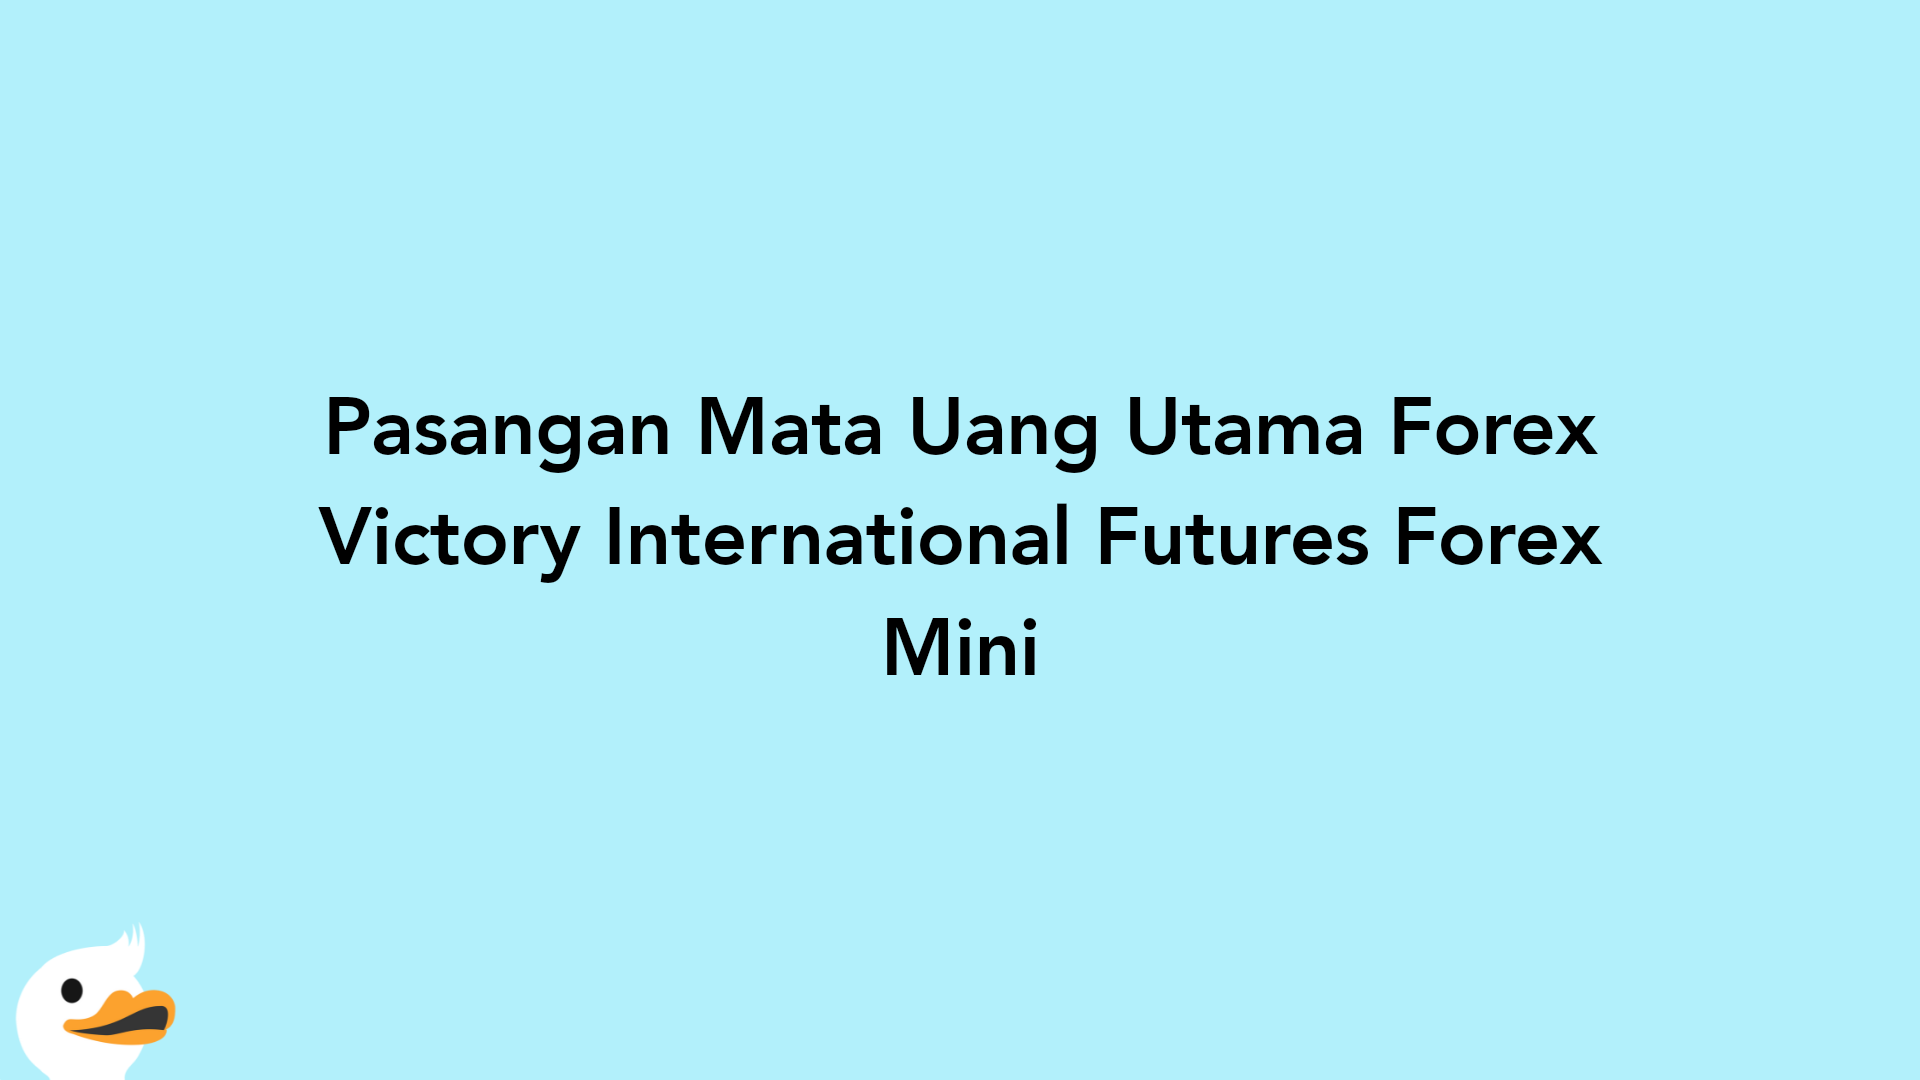 Pasangan Mata Uang Utama Forex Victory International Futures Forex Mini